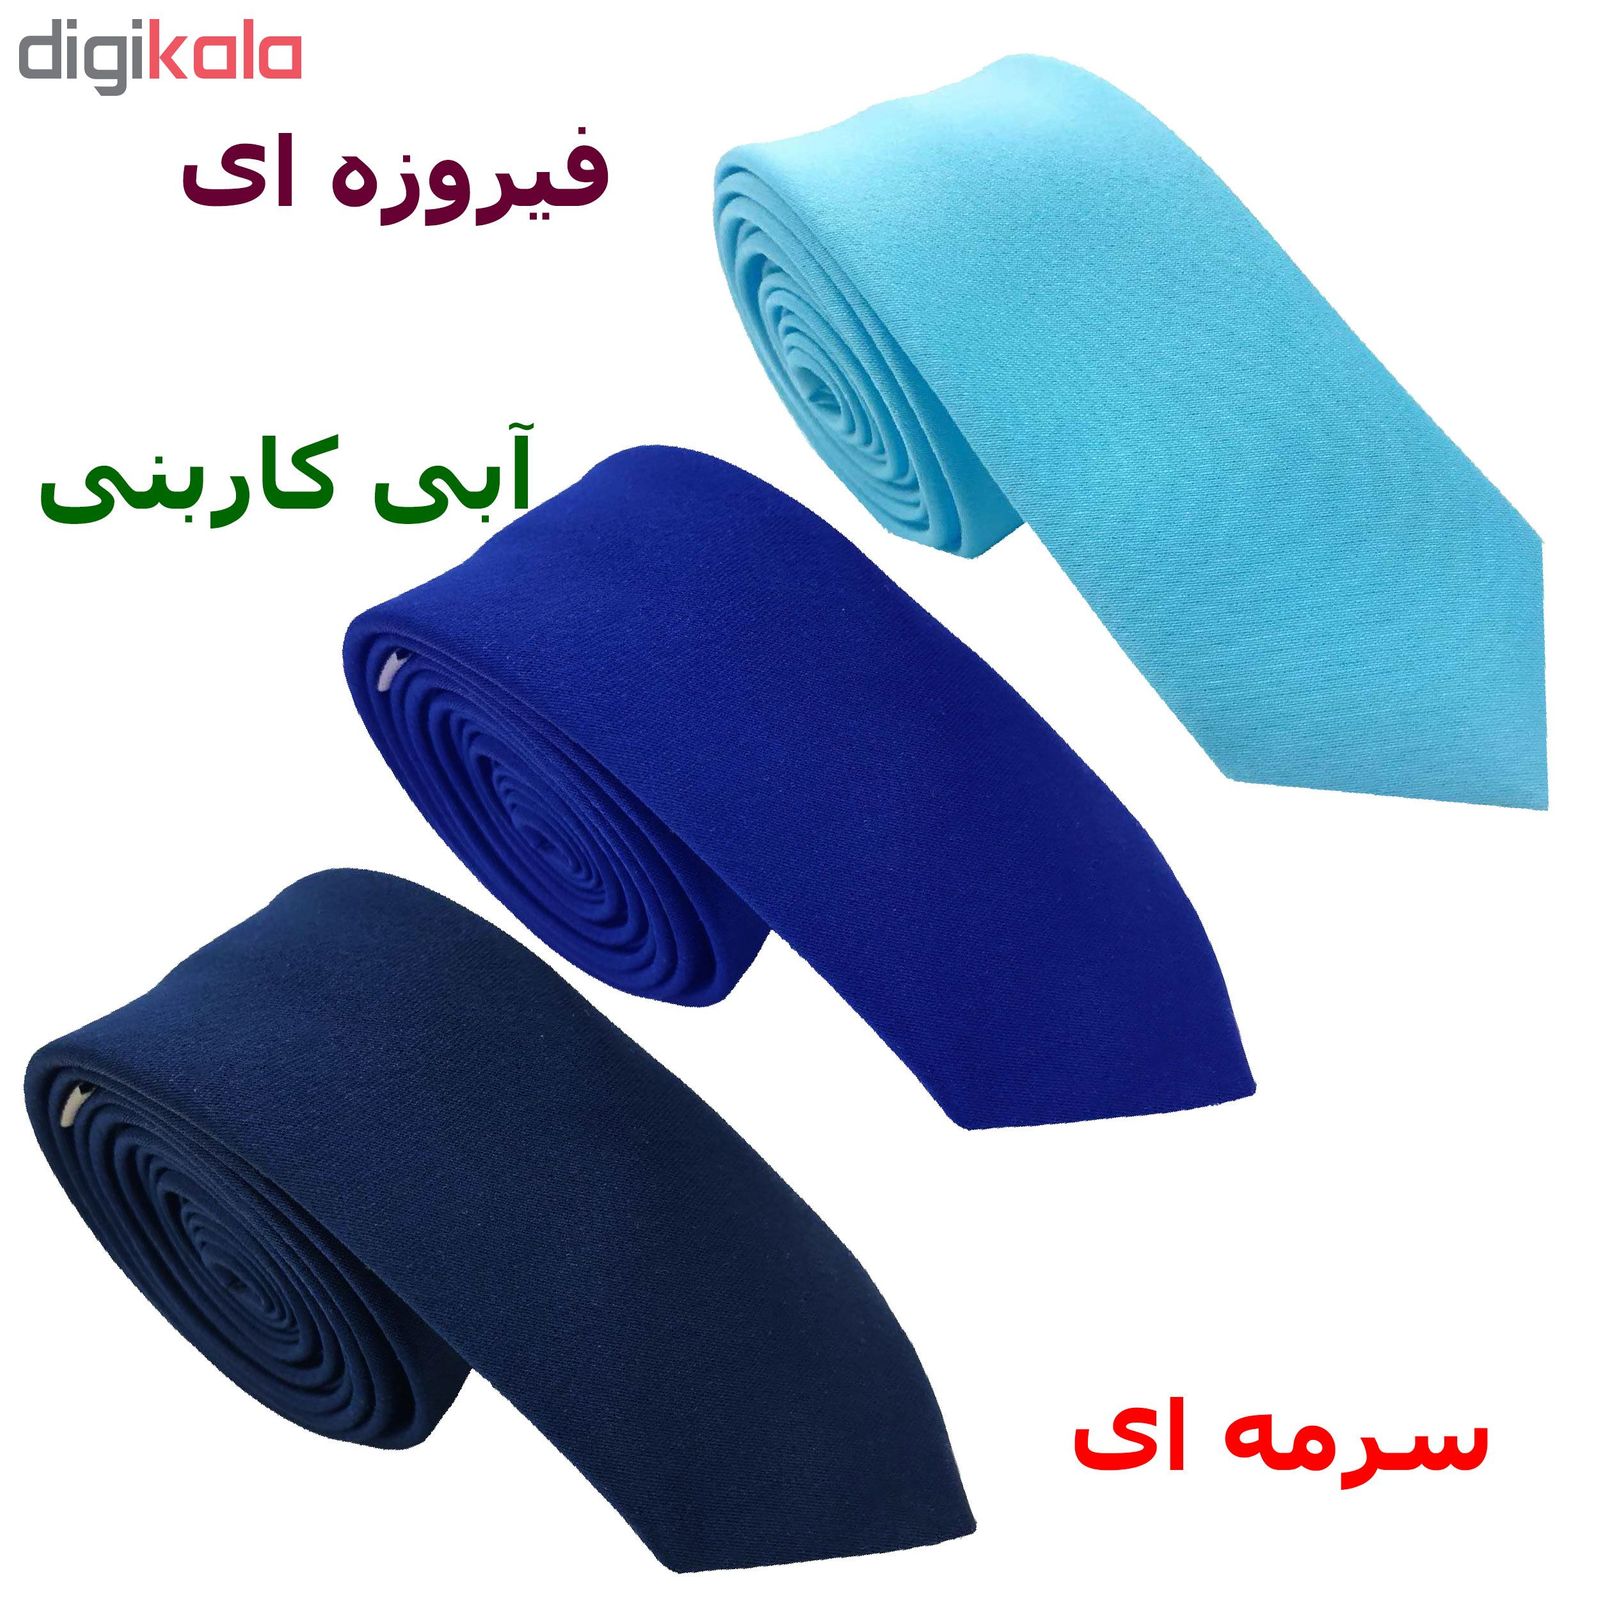 کراوات مردانه هکس ایران مدل OM-BL1 مجموعه 3 عددی -  - 2